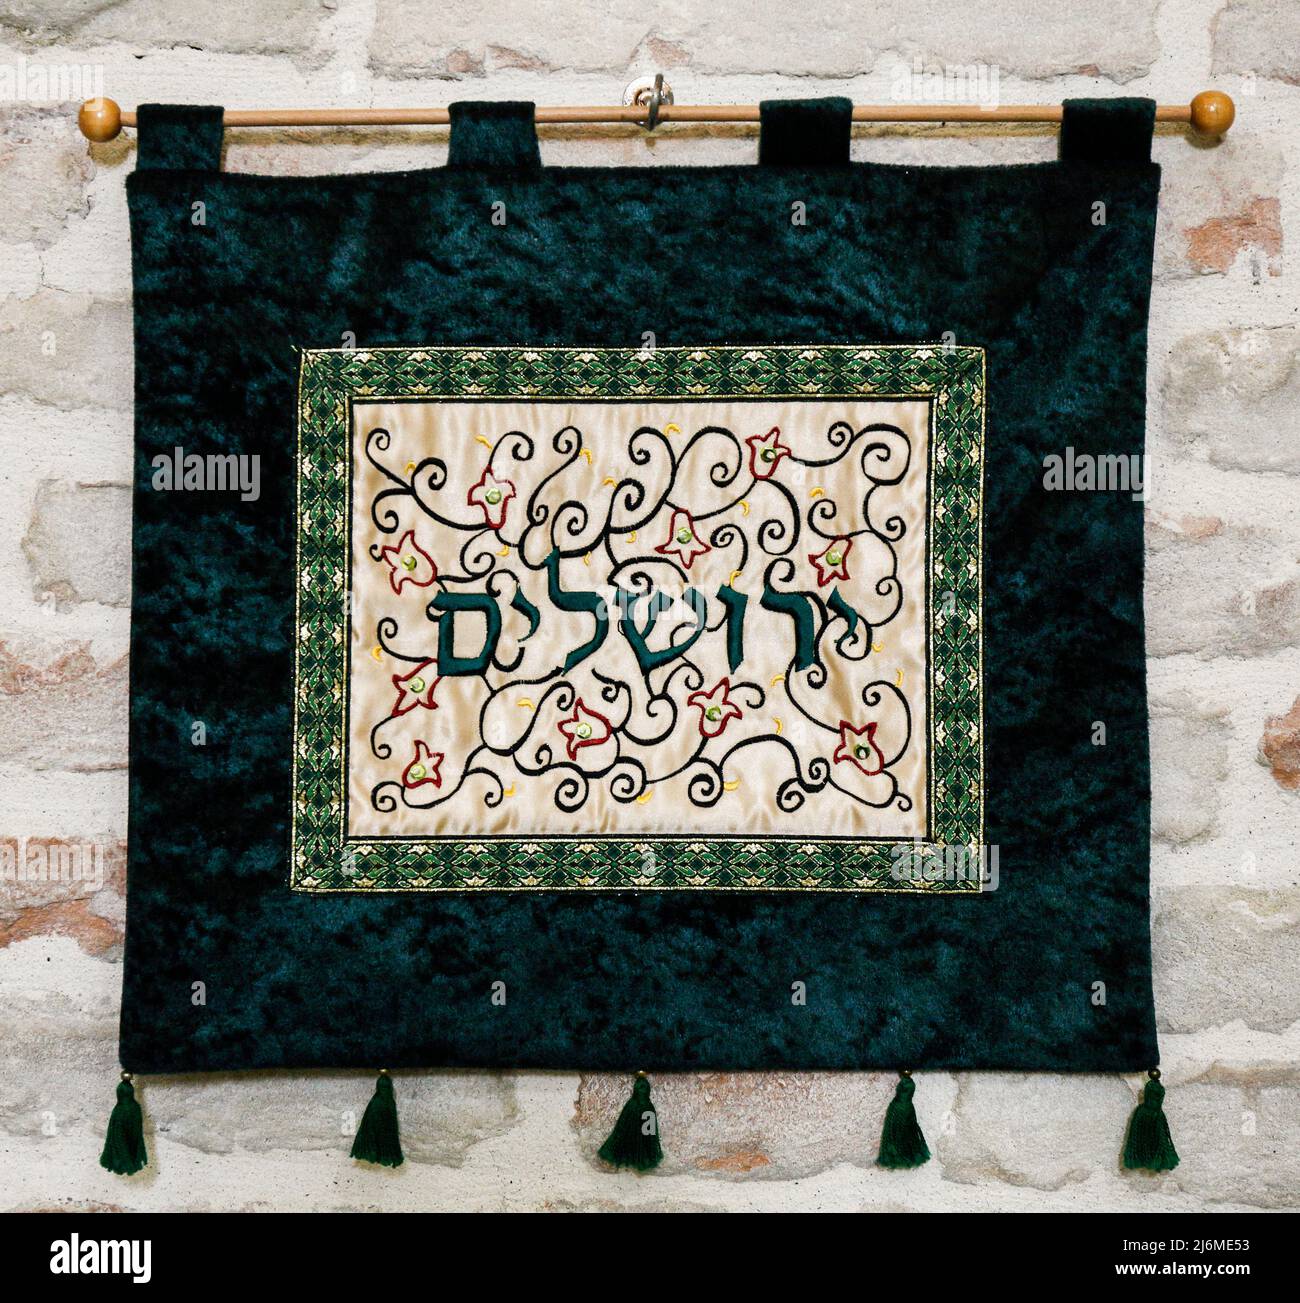 Italie Emilia Romagna Bertinoro: Musée interreligieux: Petite bannière avec l'inscription Jérusalem - Yerushalaim Banque D'Images